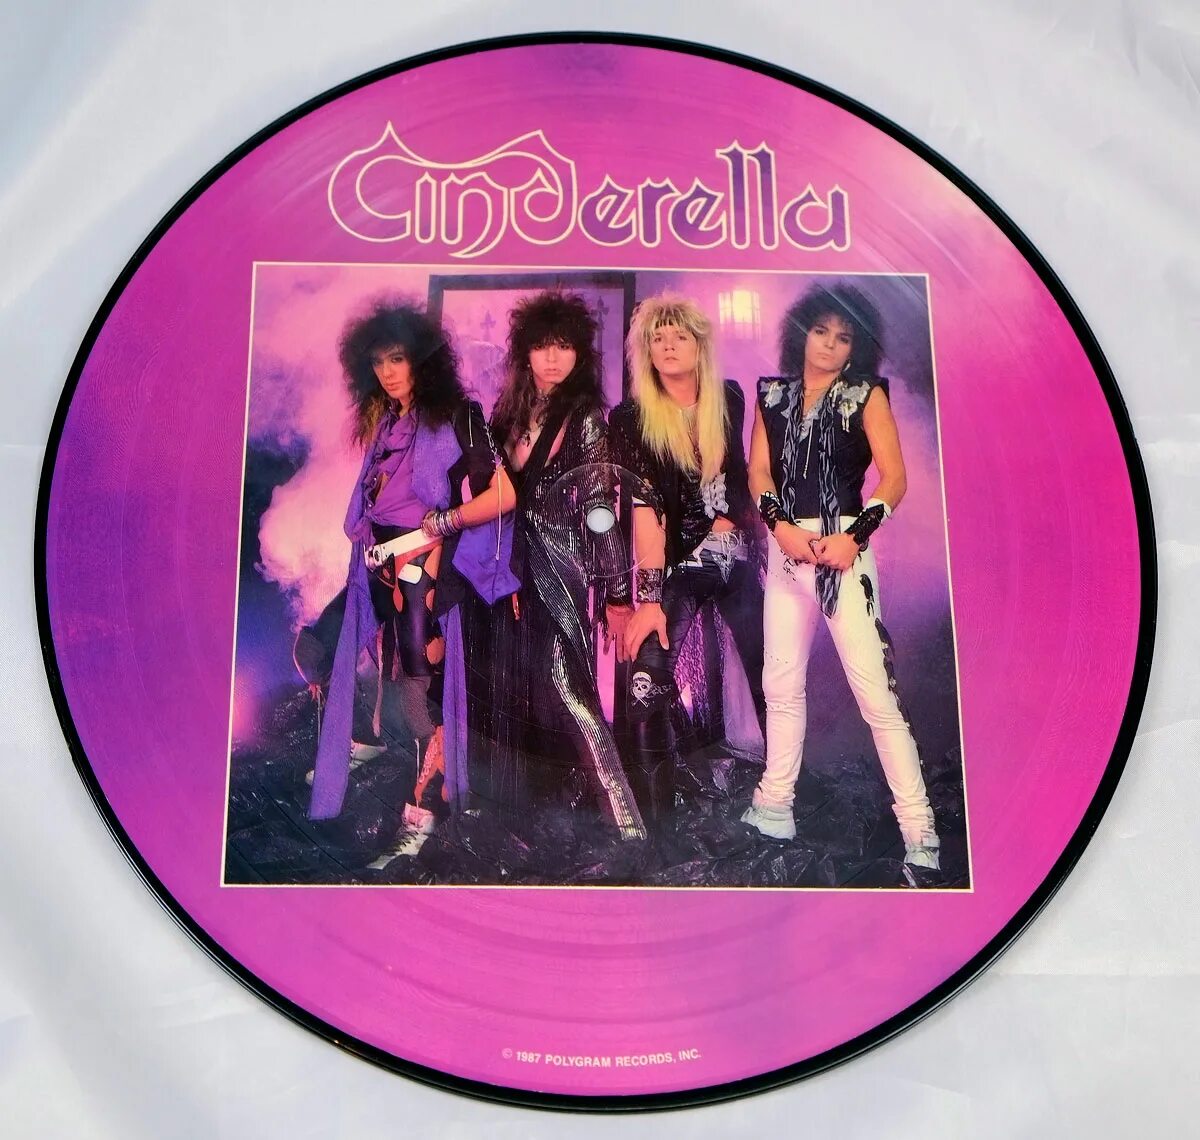 Синдерелла 1986. Cinderella Night Songs 1986. Cinderella обложки альбомов. Синдерелла 1986 обложка диска.